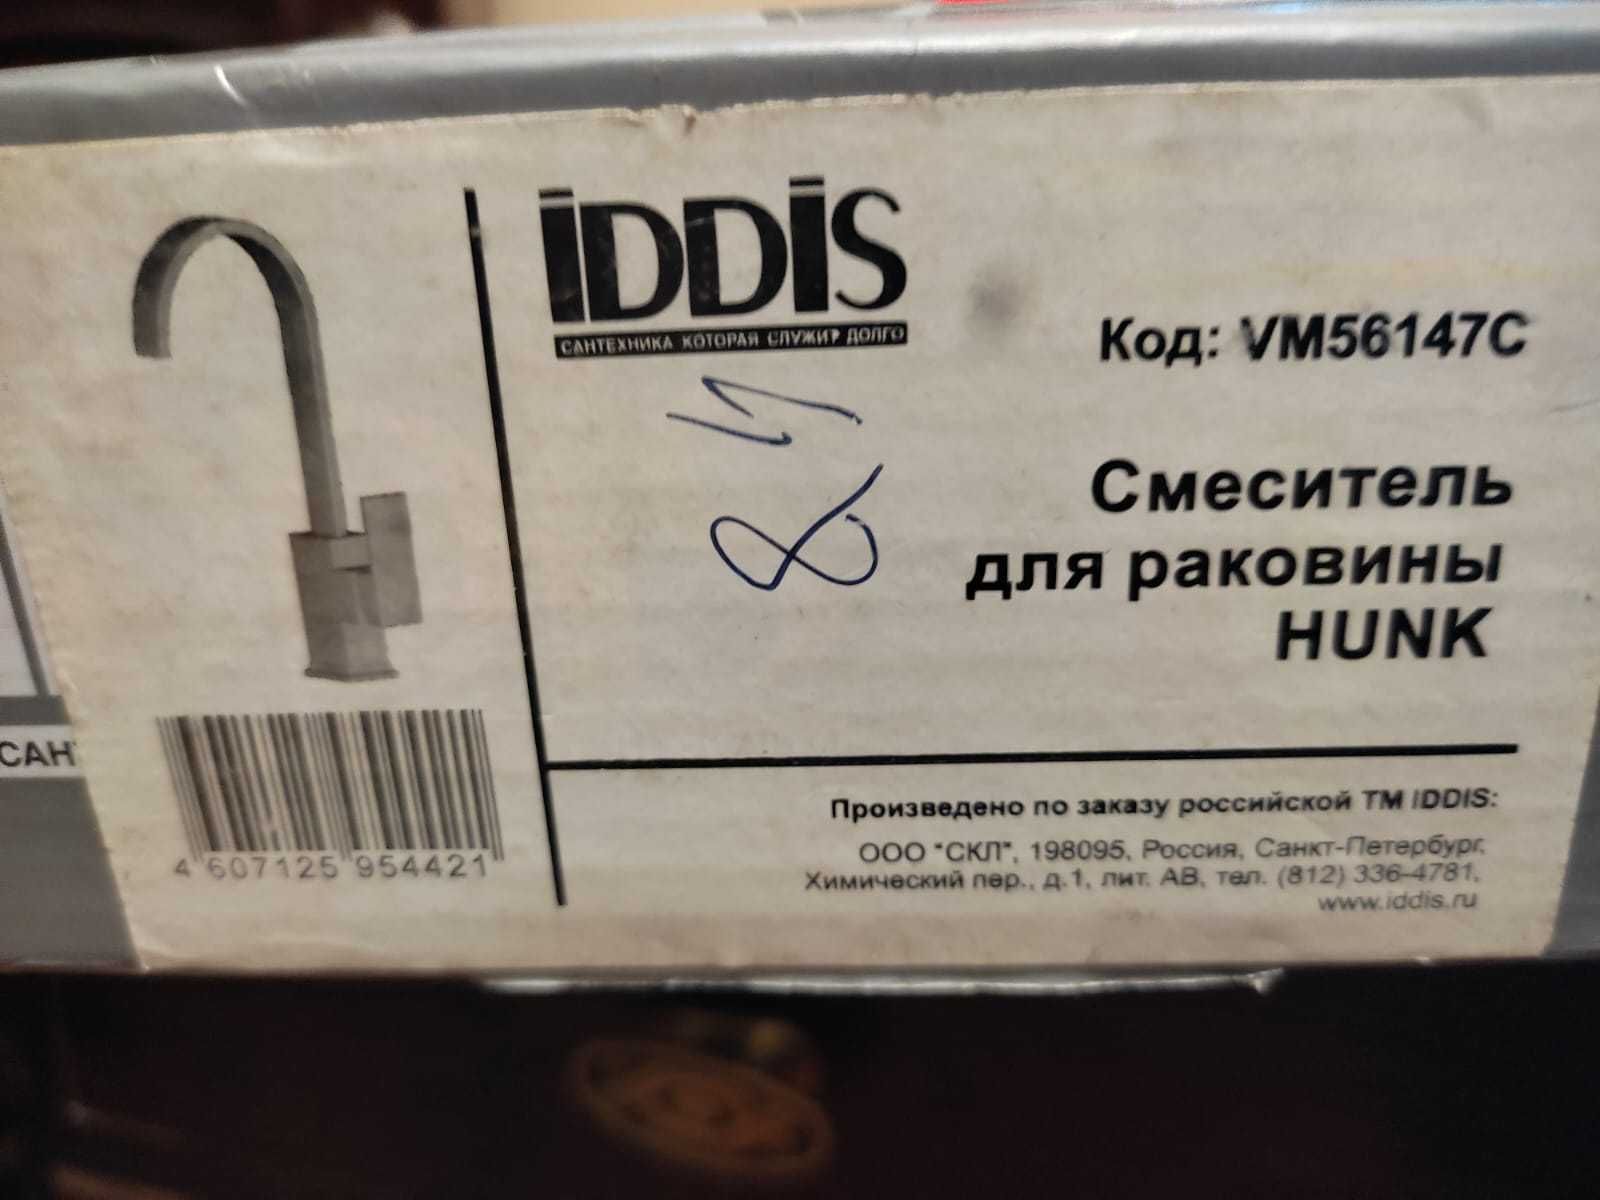 Смеситель для раковины IDDIS HUNK VM56147C латунь